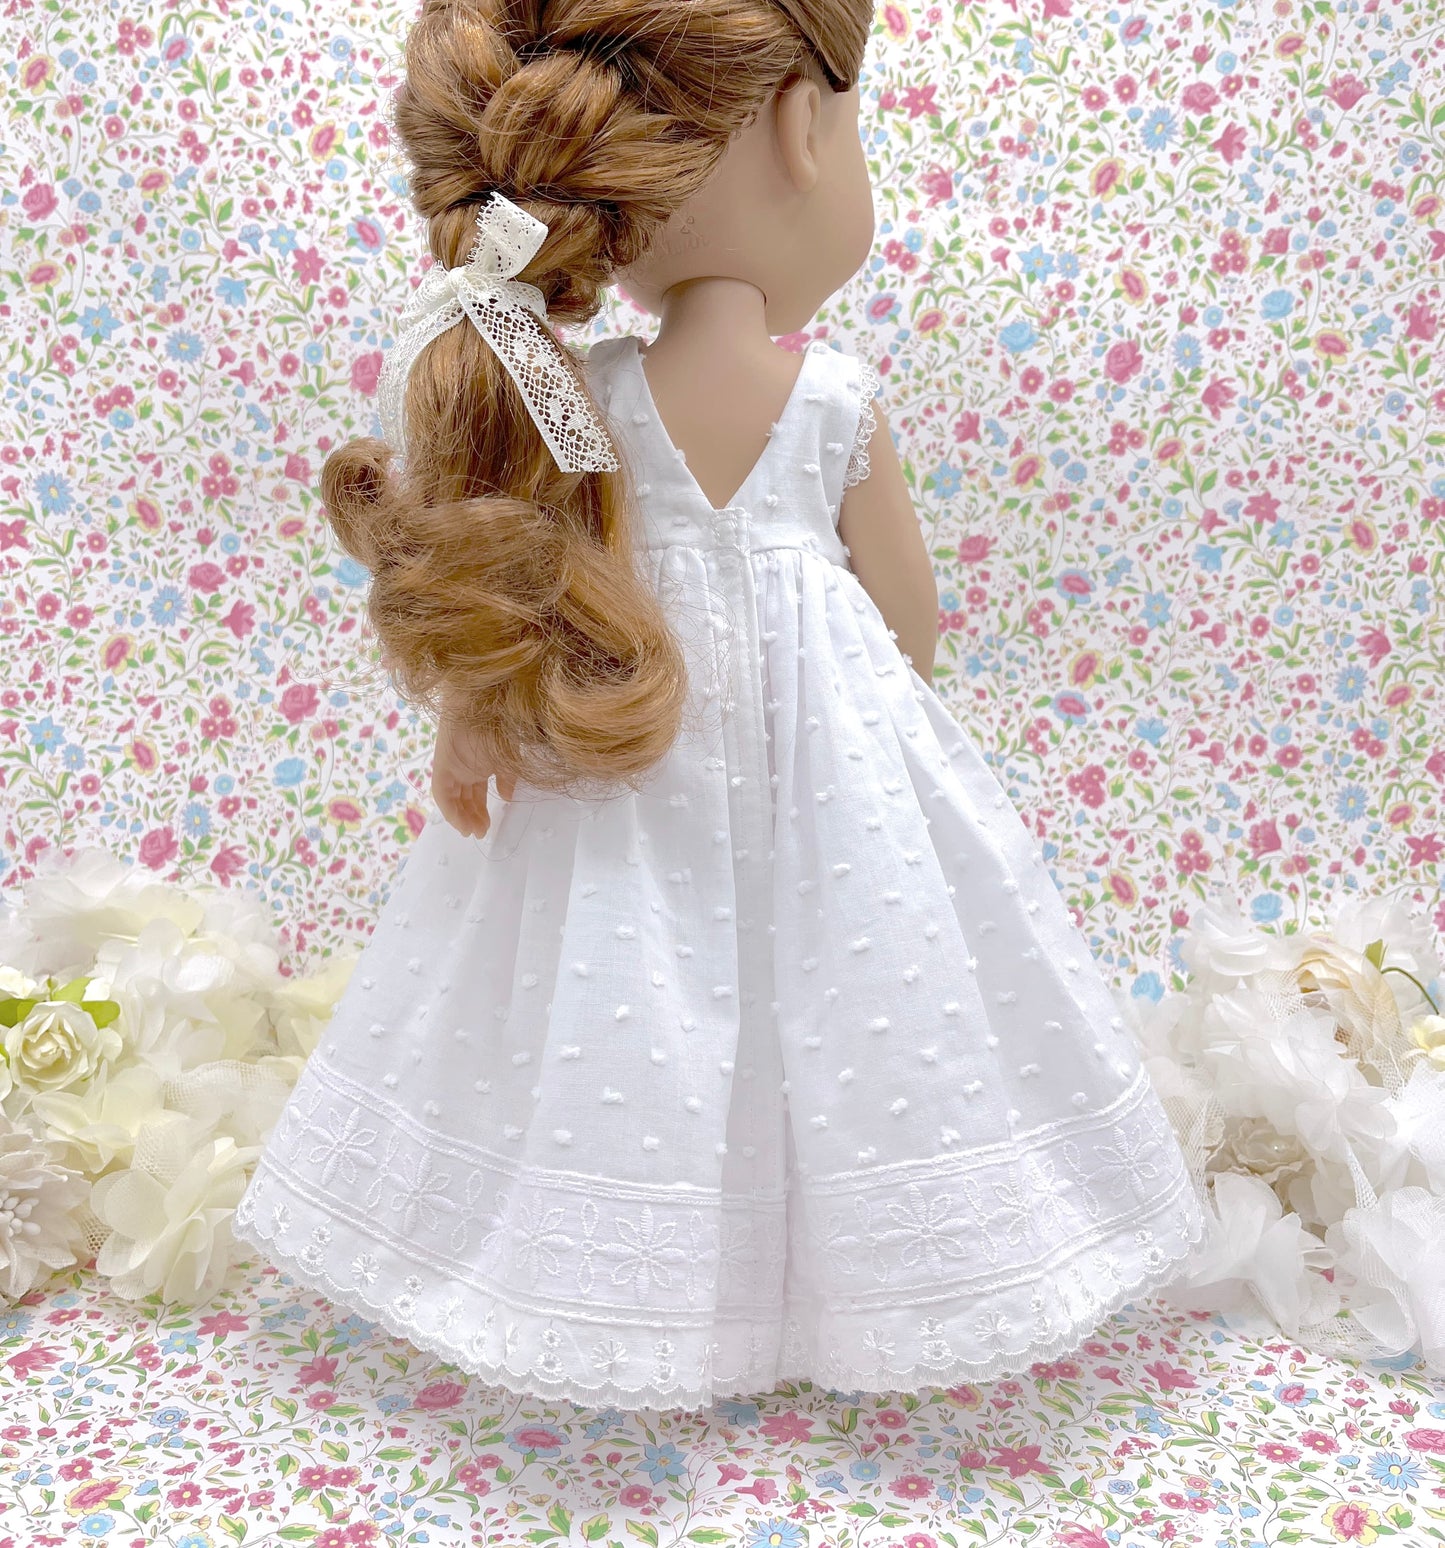 Muñeca de comunión personalizada con vestido Zoe plumeti